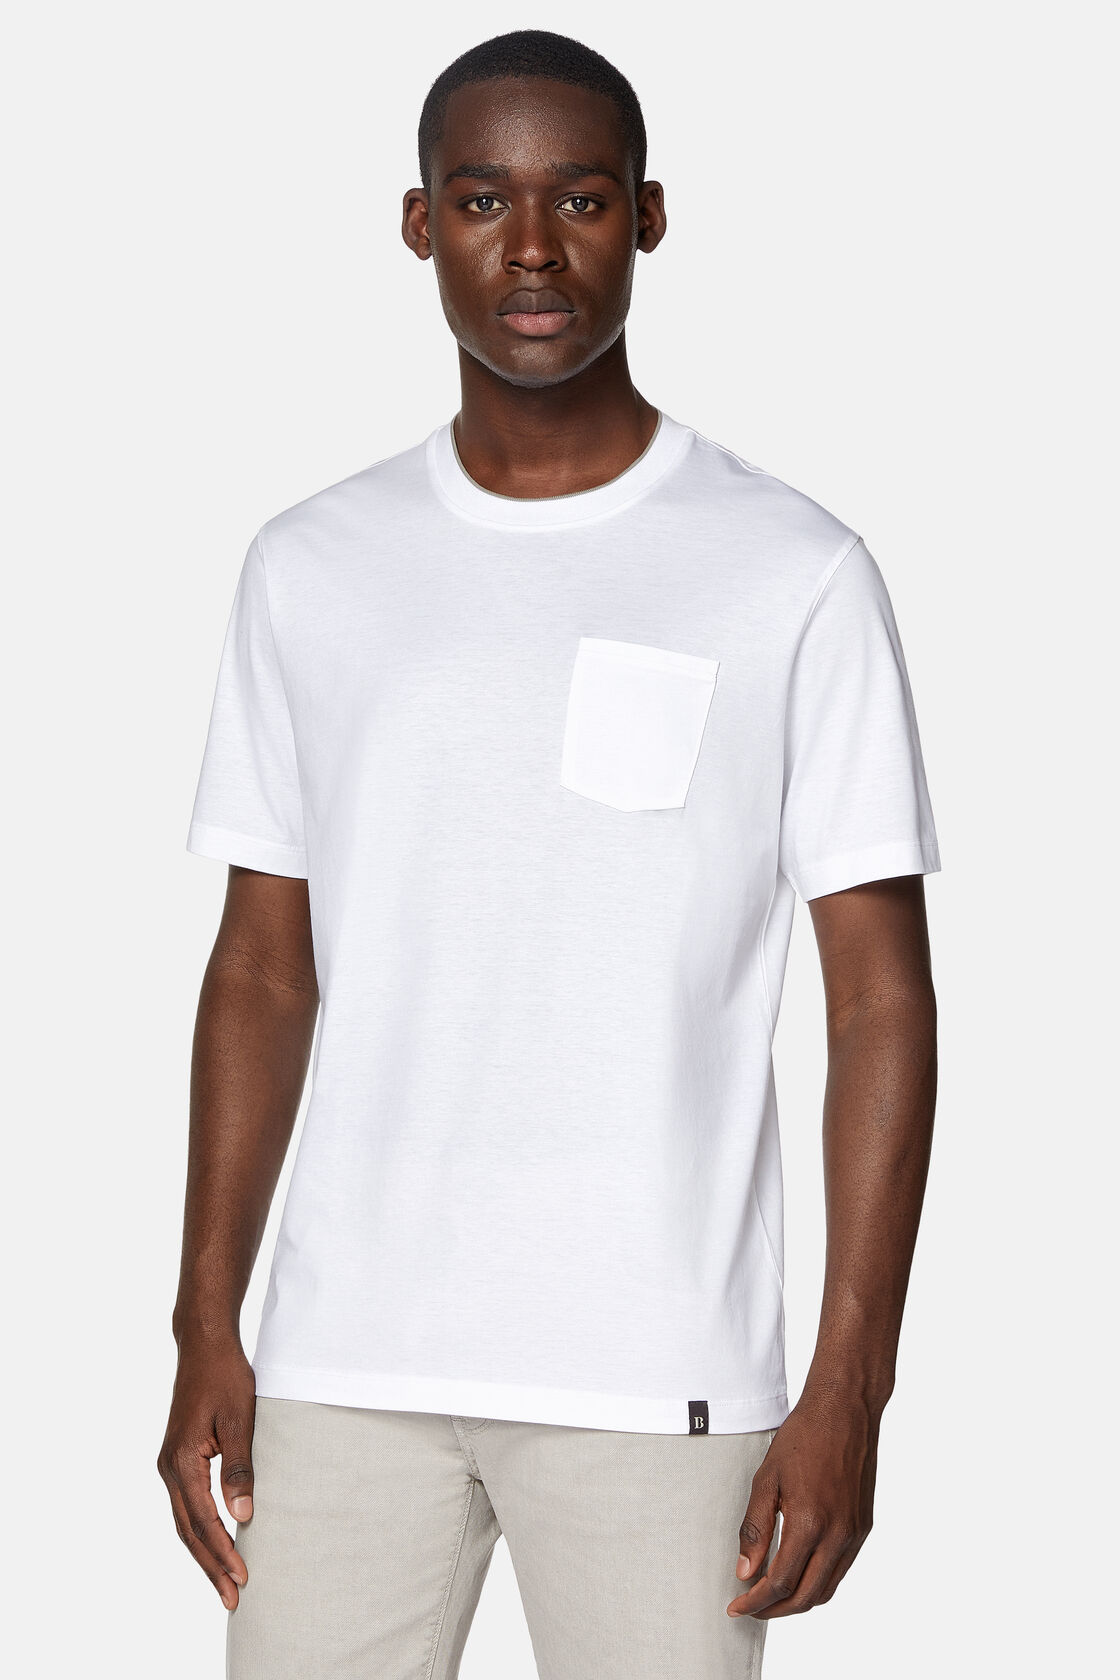 T-shirt in katoen en tencel jersey, White, hi-res